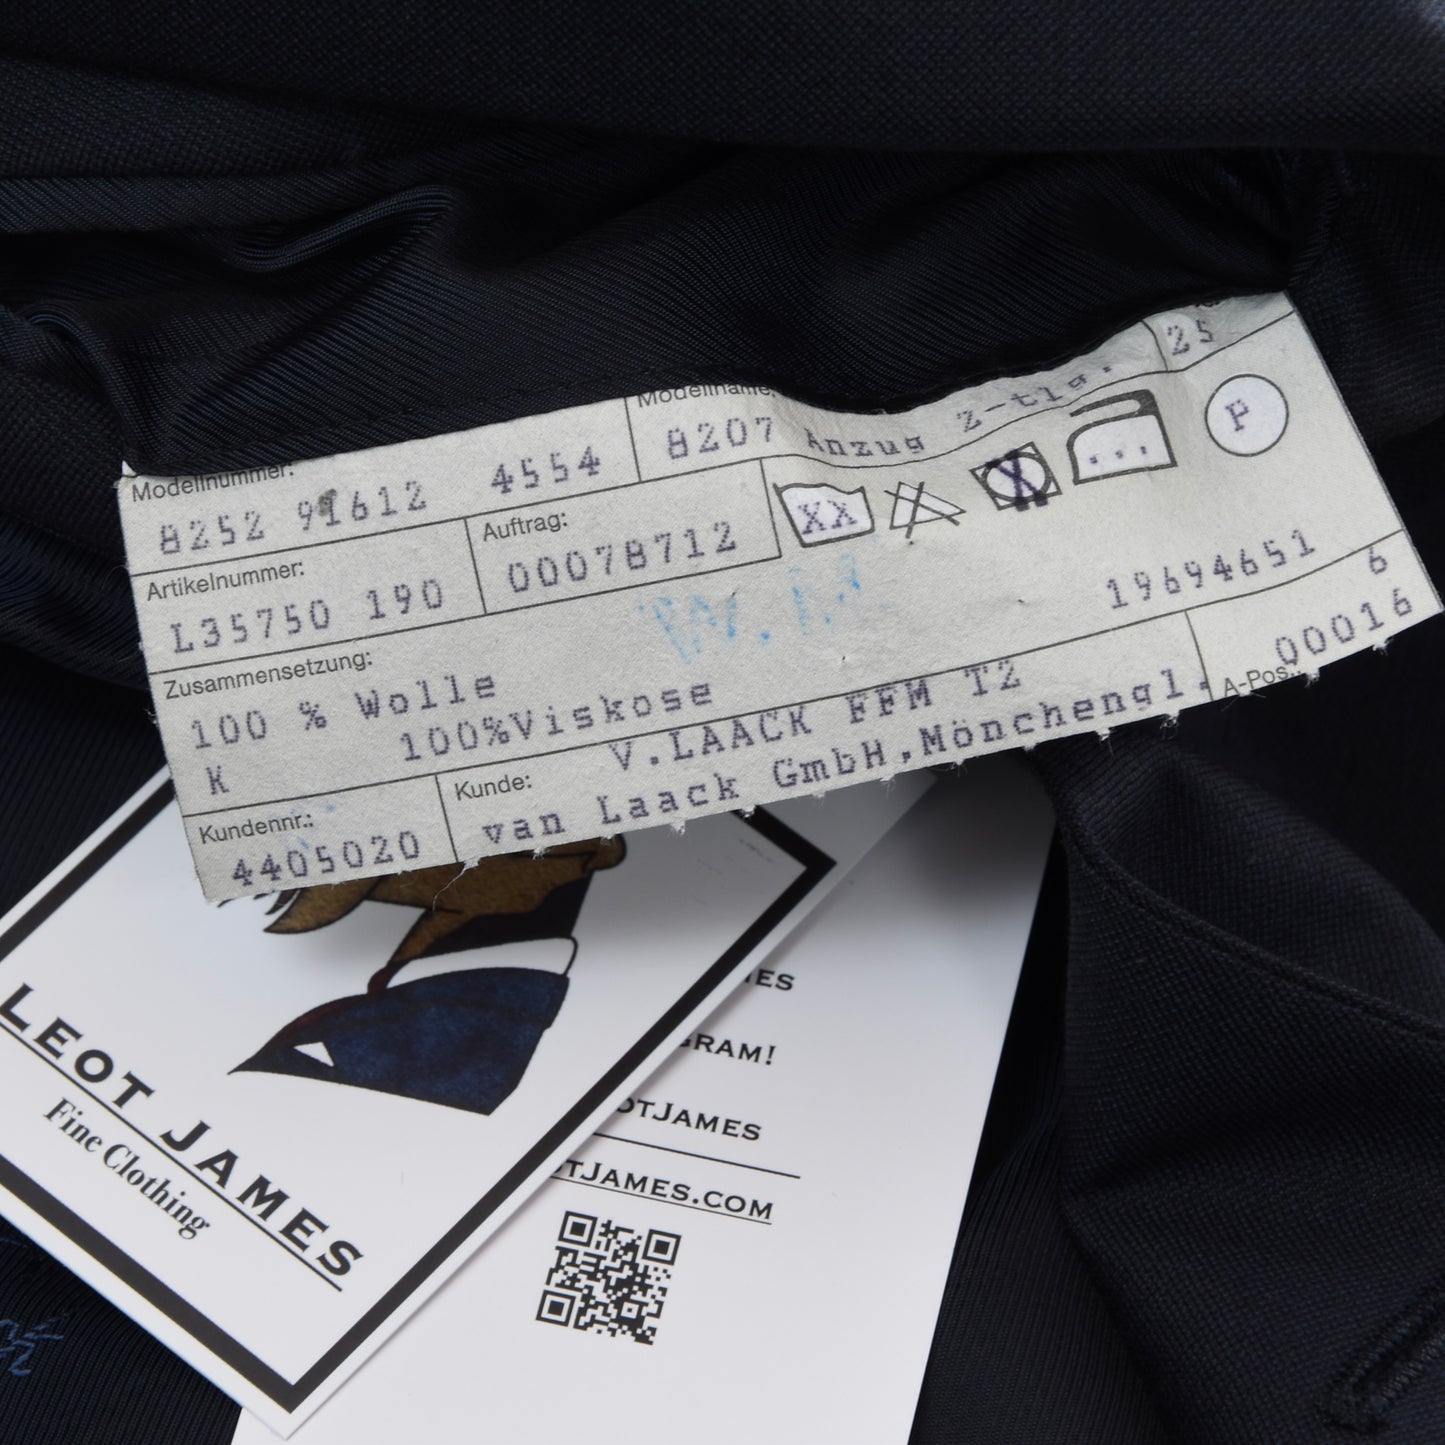 Van Laack x Regent Super 100s Wool Suit Size 25 - Navy Blue